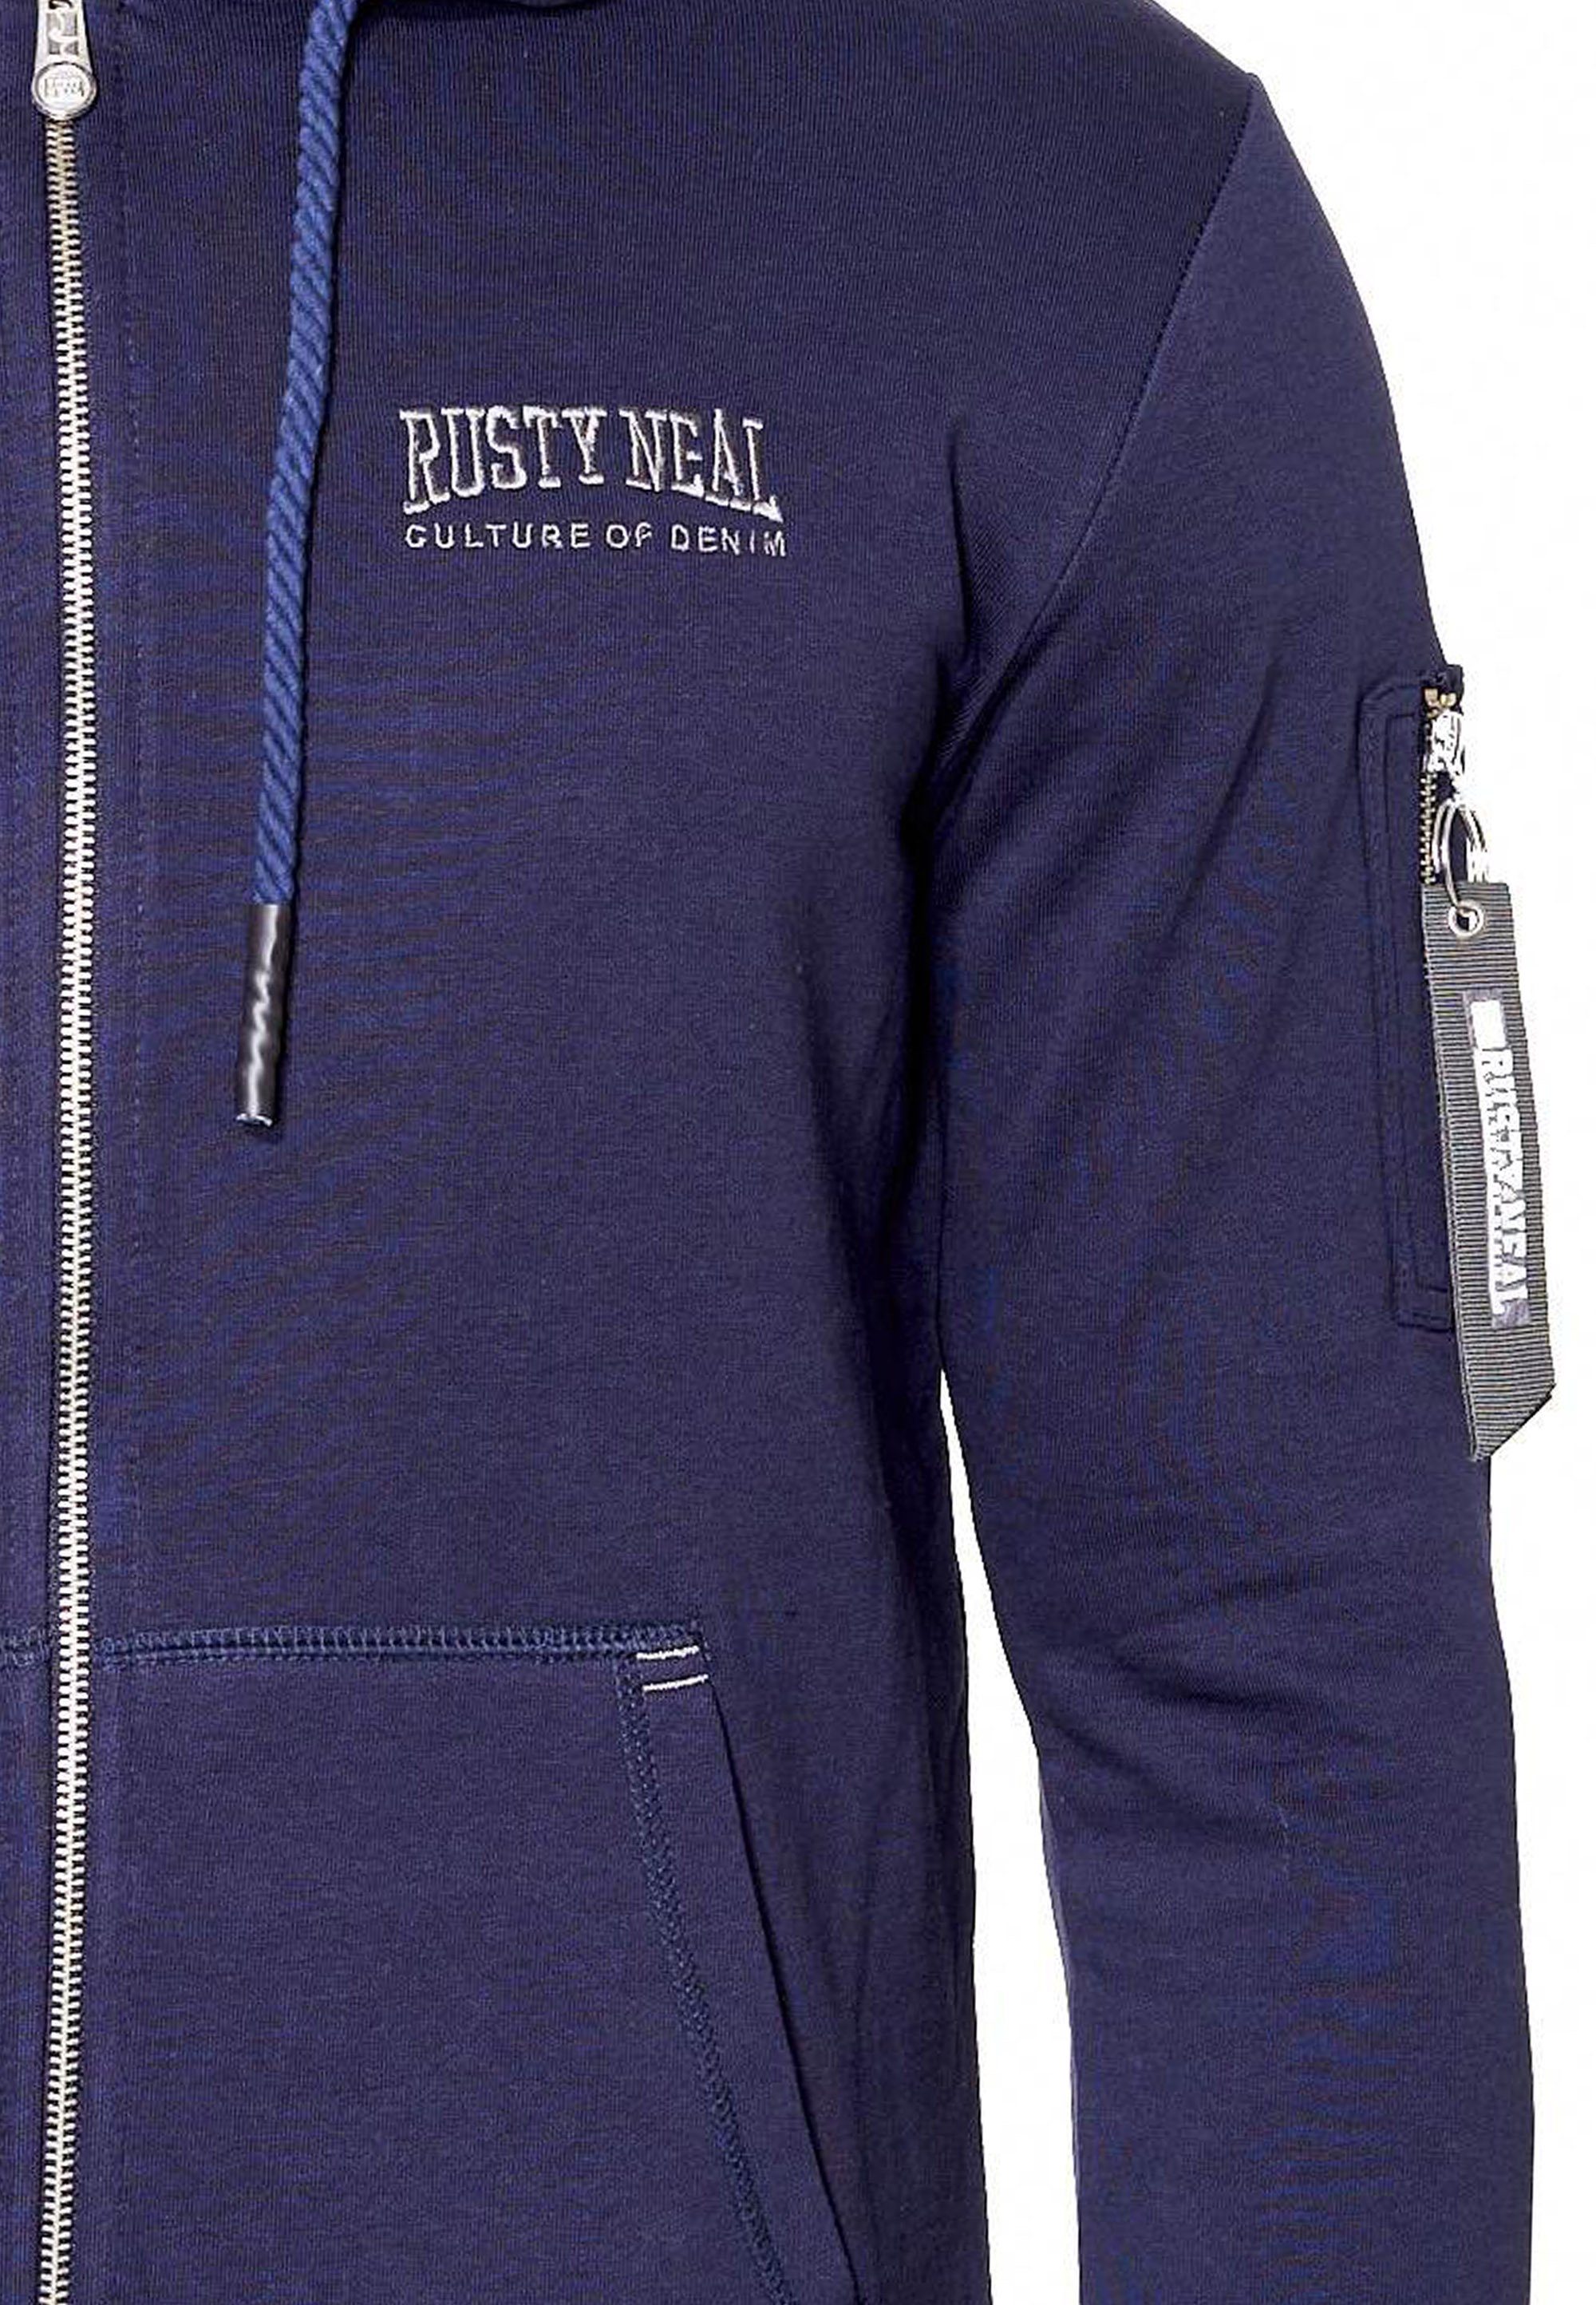 Rusty Neal Sweatjacke mit stylischer dunkelblau Ärmeltasche